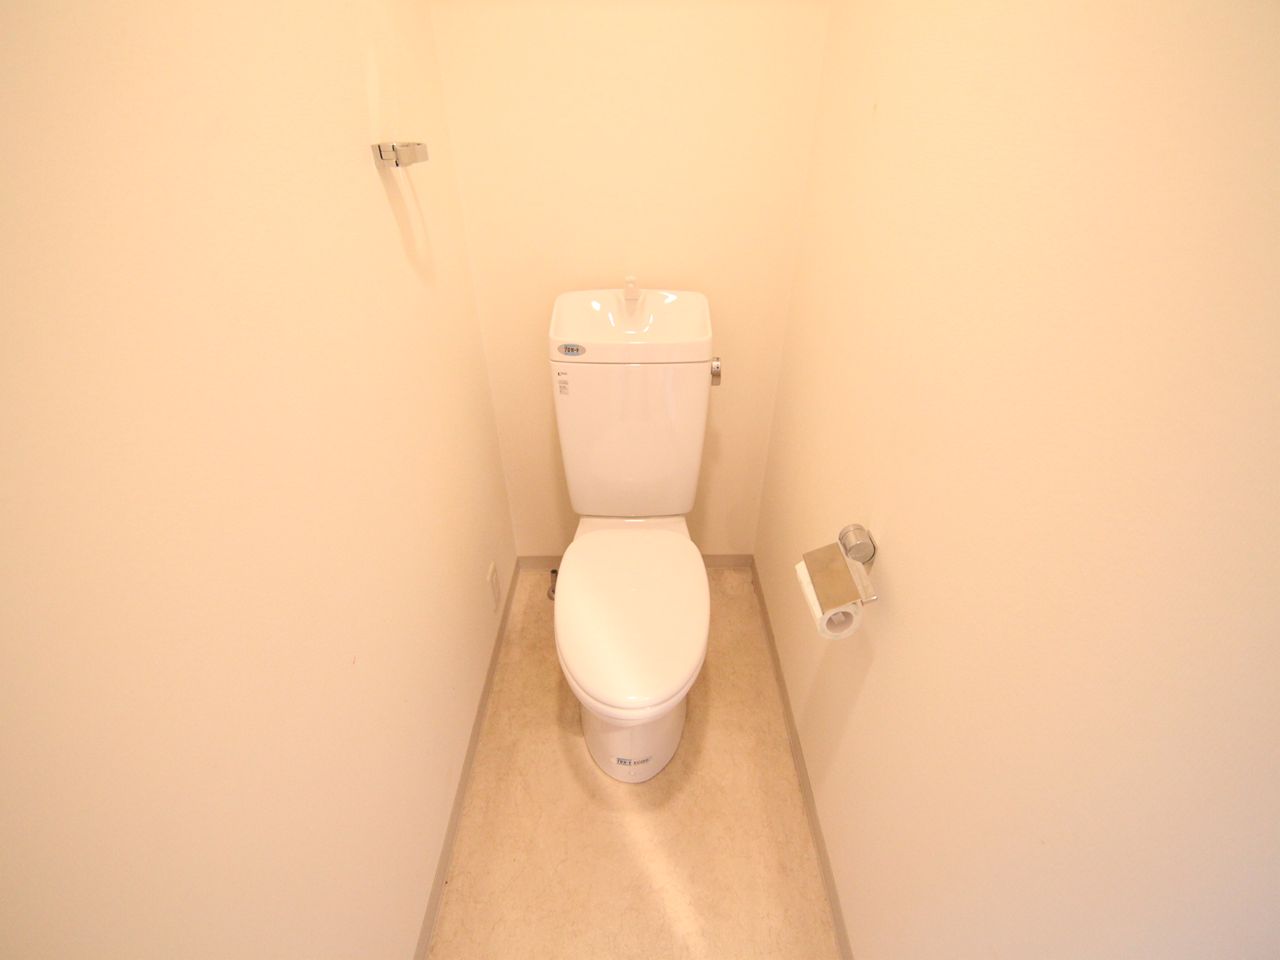 Toilet. Toilet (bath separate toilet) warm water washing toilet seat mounting Allowed